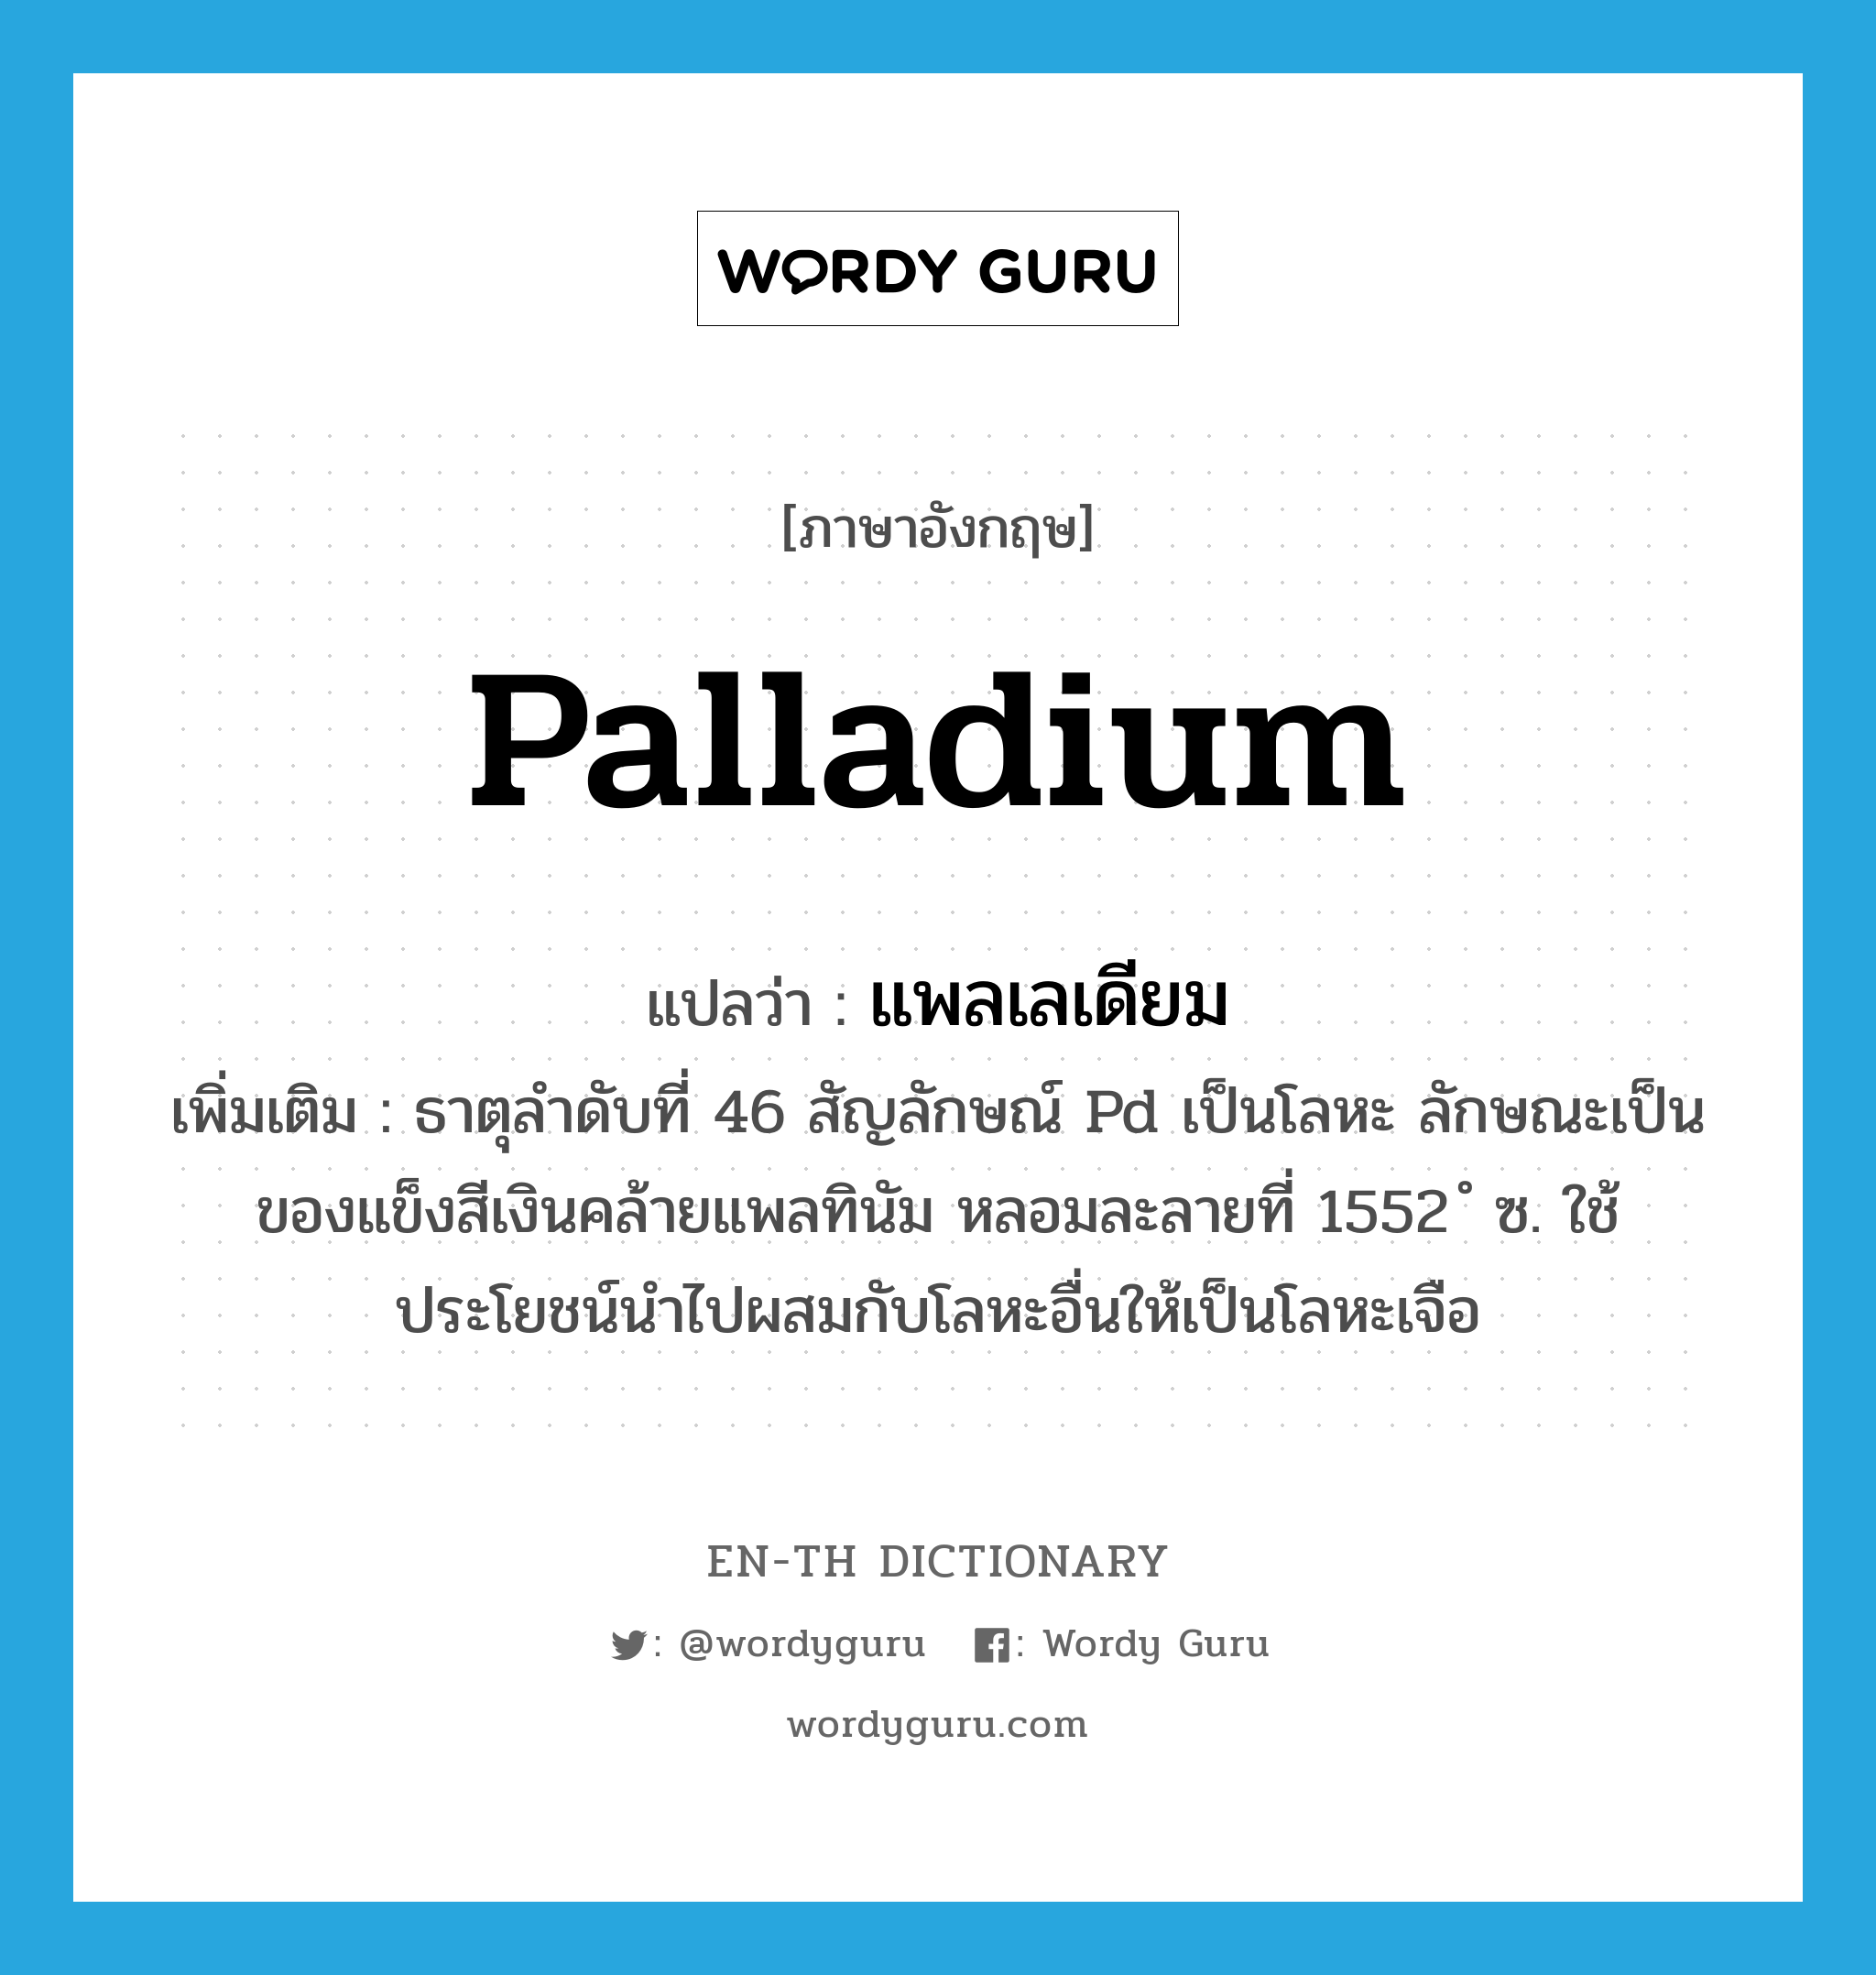 แพลเลเดียม ภาษาอังกฤษ?, คำศัพท์ภาษาอังกฤษ แพลเลเดียม แปลว่า palladium ประเภท N เพิ่มเติม ธาตุลำดับที่ 46 สัญลักษณ์ Pd เป็นโลหะ ลักษณะเป็นของแข็งสีเงินคล้ายแพลทินัม หลอมละลายที่ 1552 ํ ซ. ใช้ประโยชน์นำไปผสมกับโลหะอื่นให้เป็นโลหะเจือ หมวด N